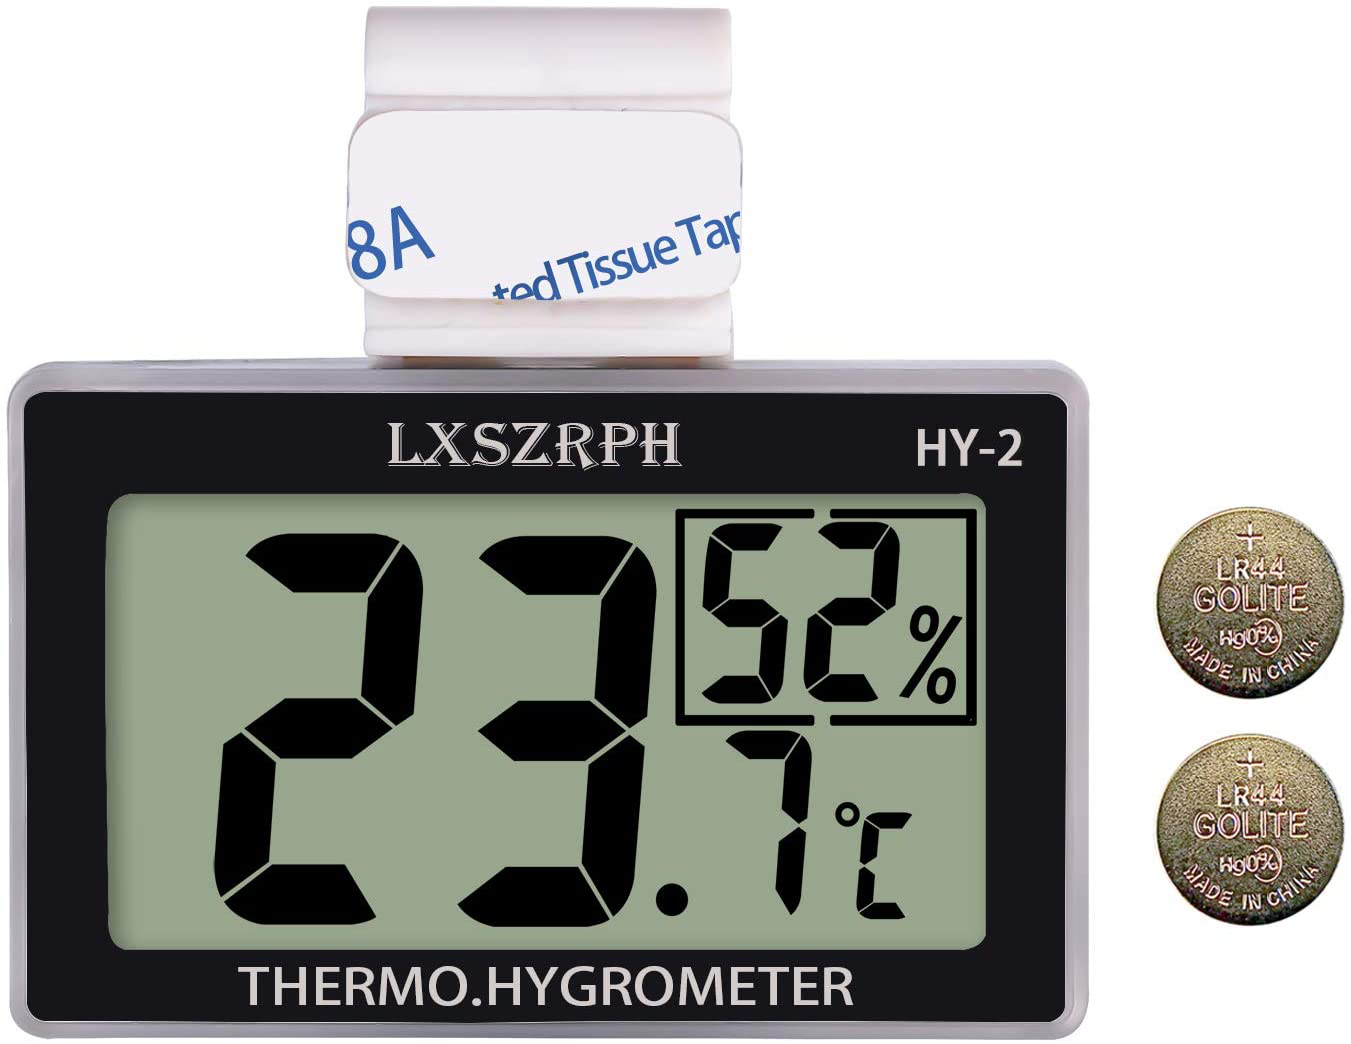 Mini Reptile Terrarium Thermometer Hygrometer with Probe Reptile